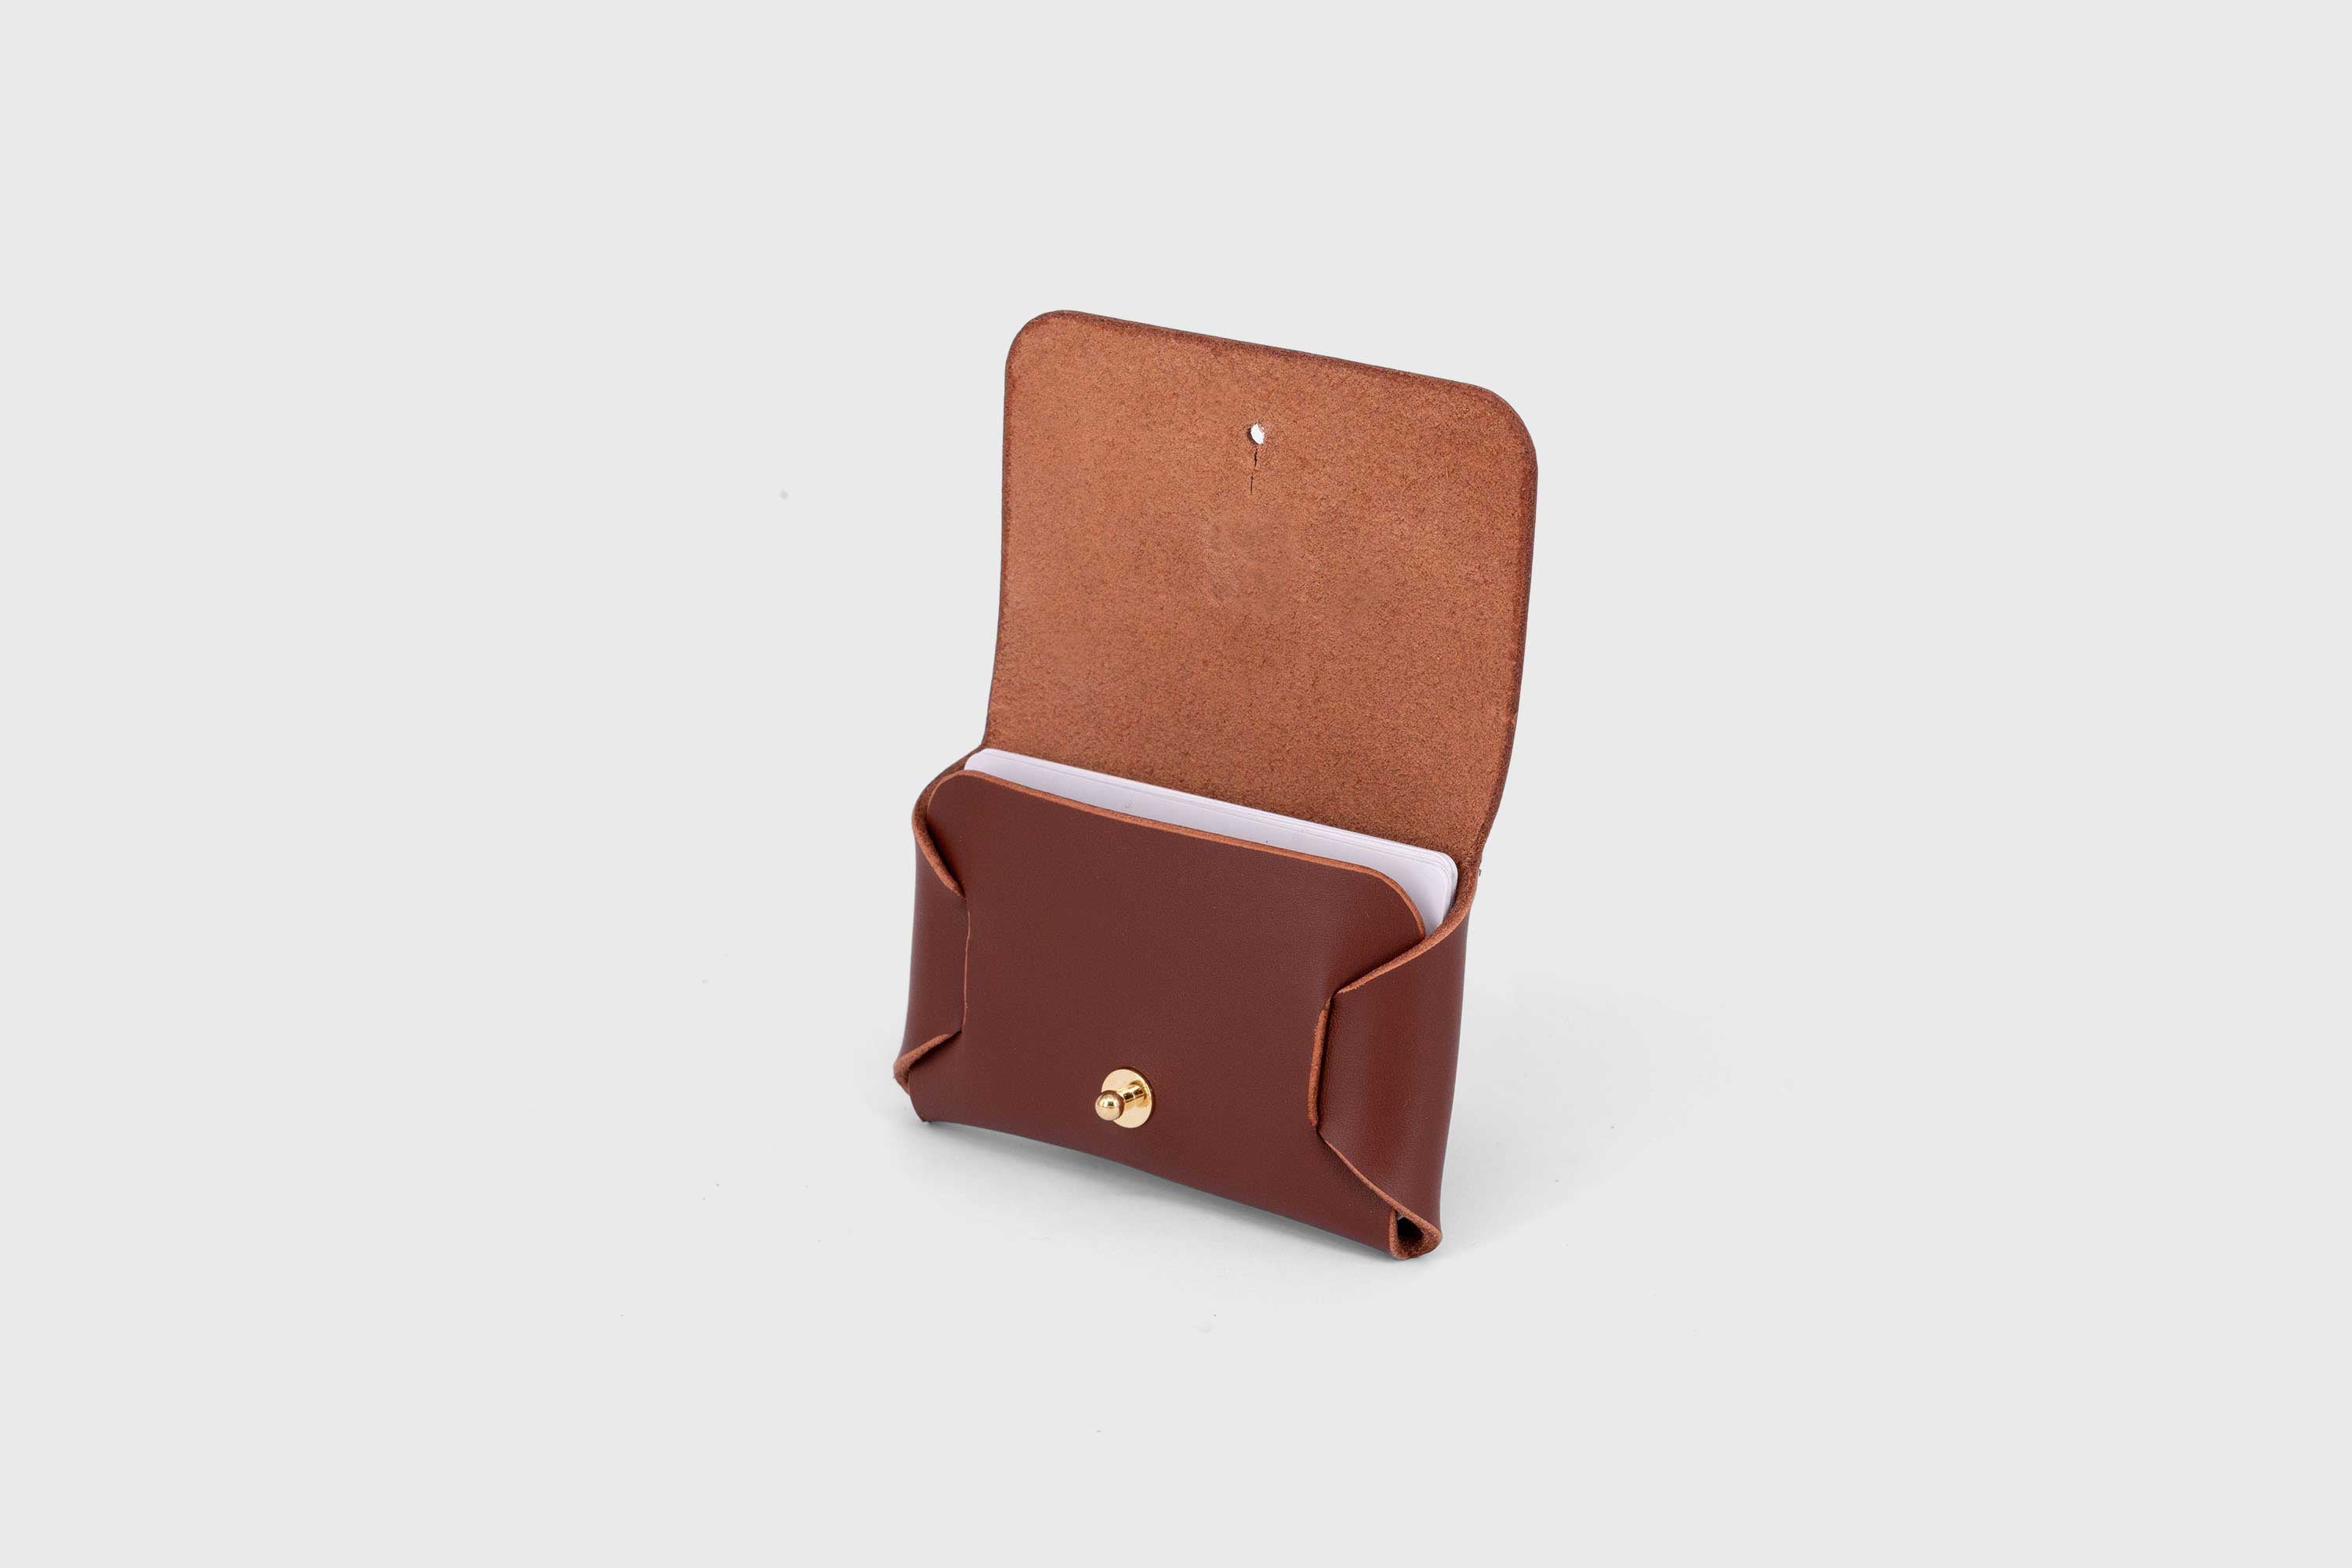 Leather wallet cardholder horizontal design dark brown color minimalist design atelier madre manuel dreesmann barcelona